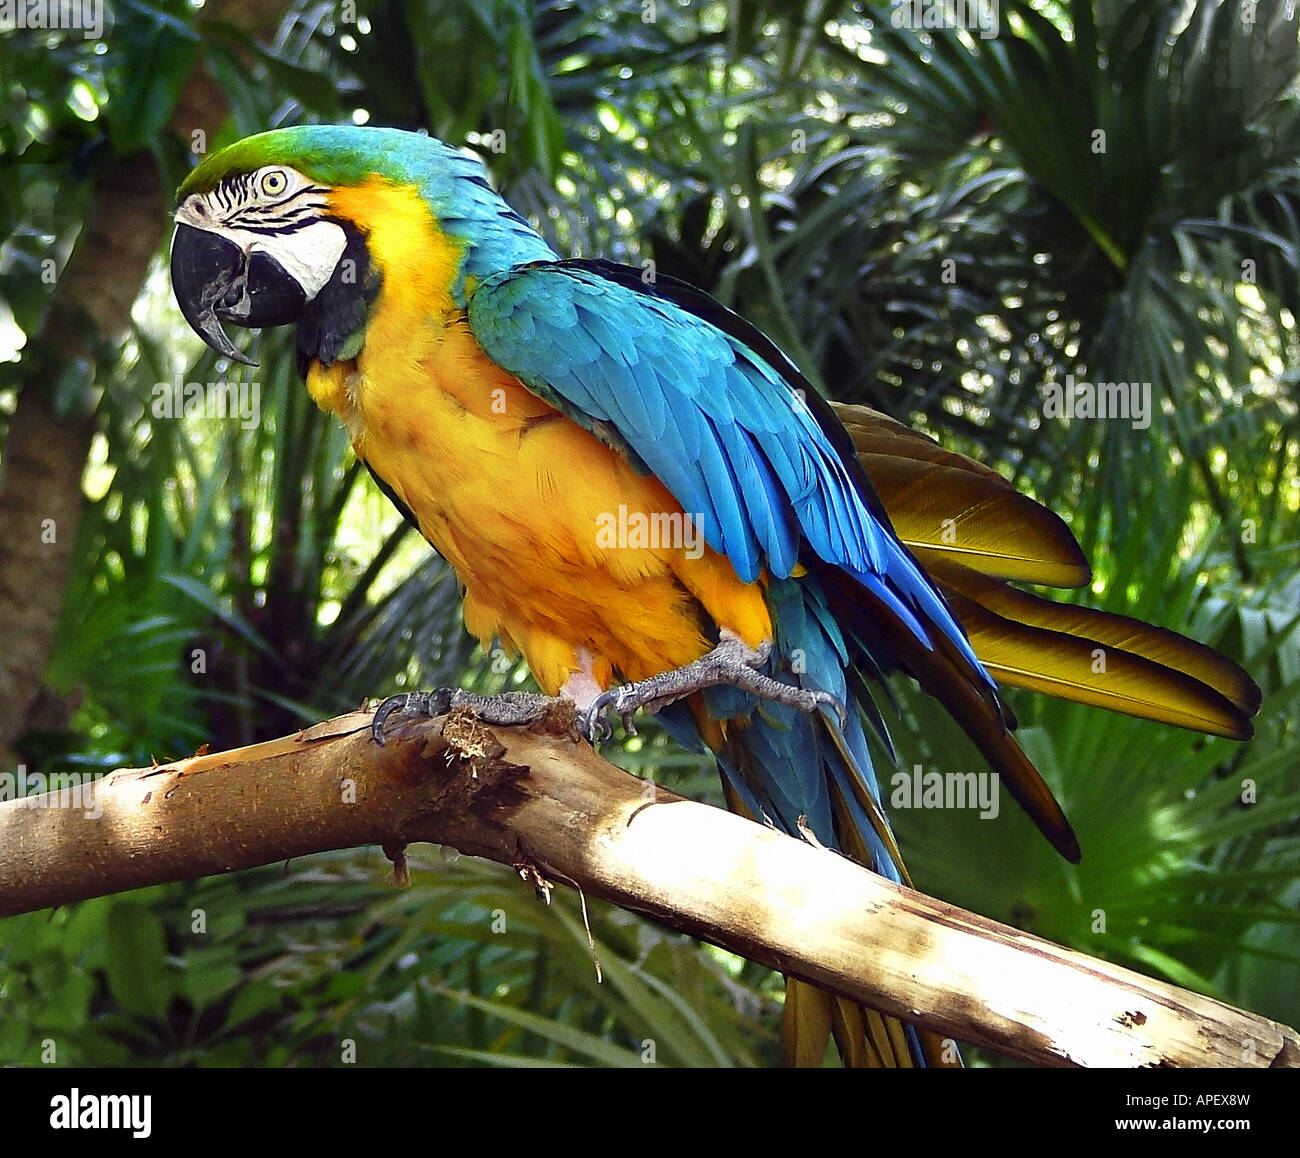 Papagei, bunt, thront auf Zweig, Blick auf Betrachter seitwärts,  Ganzkörper, mit Dschungel-ähnlichen Hintergrund Stockfotografie - Alamy